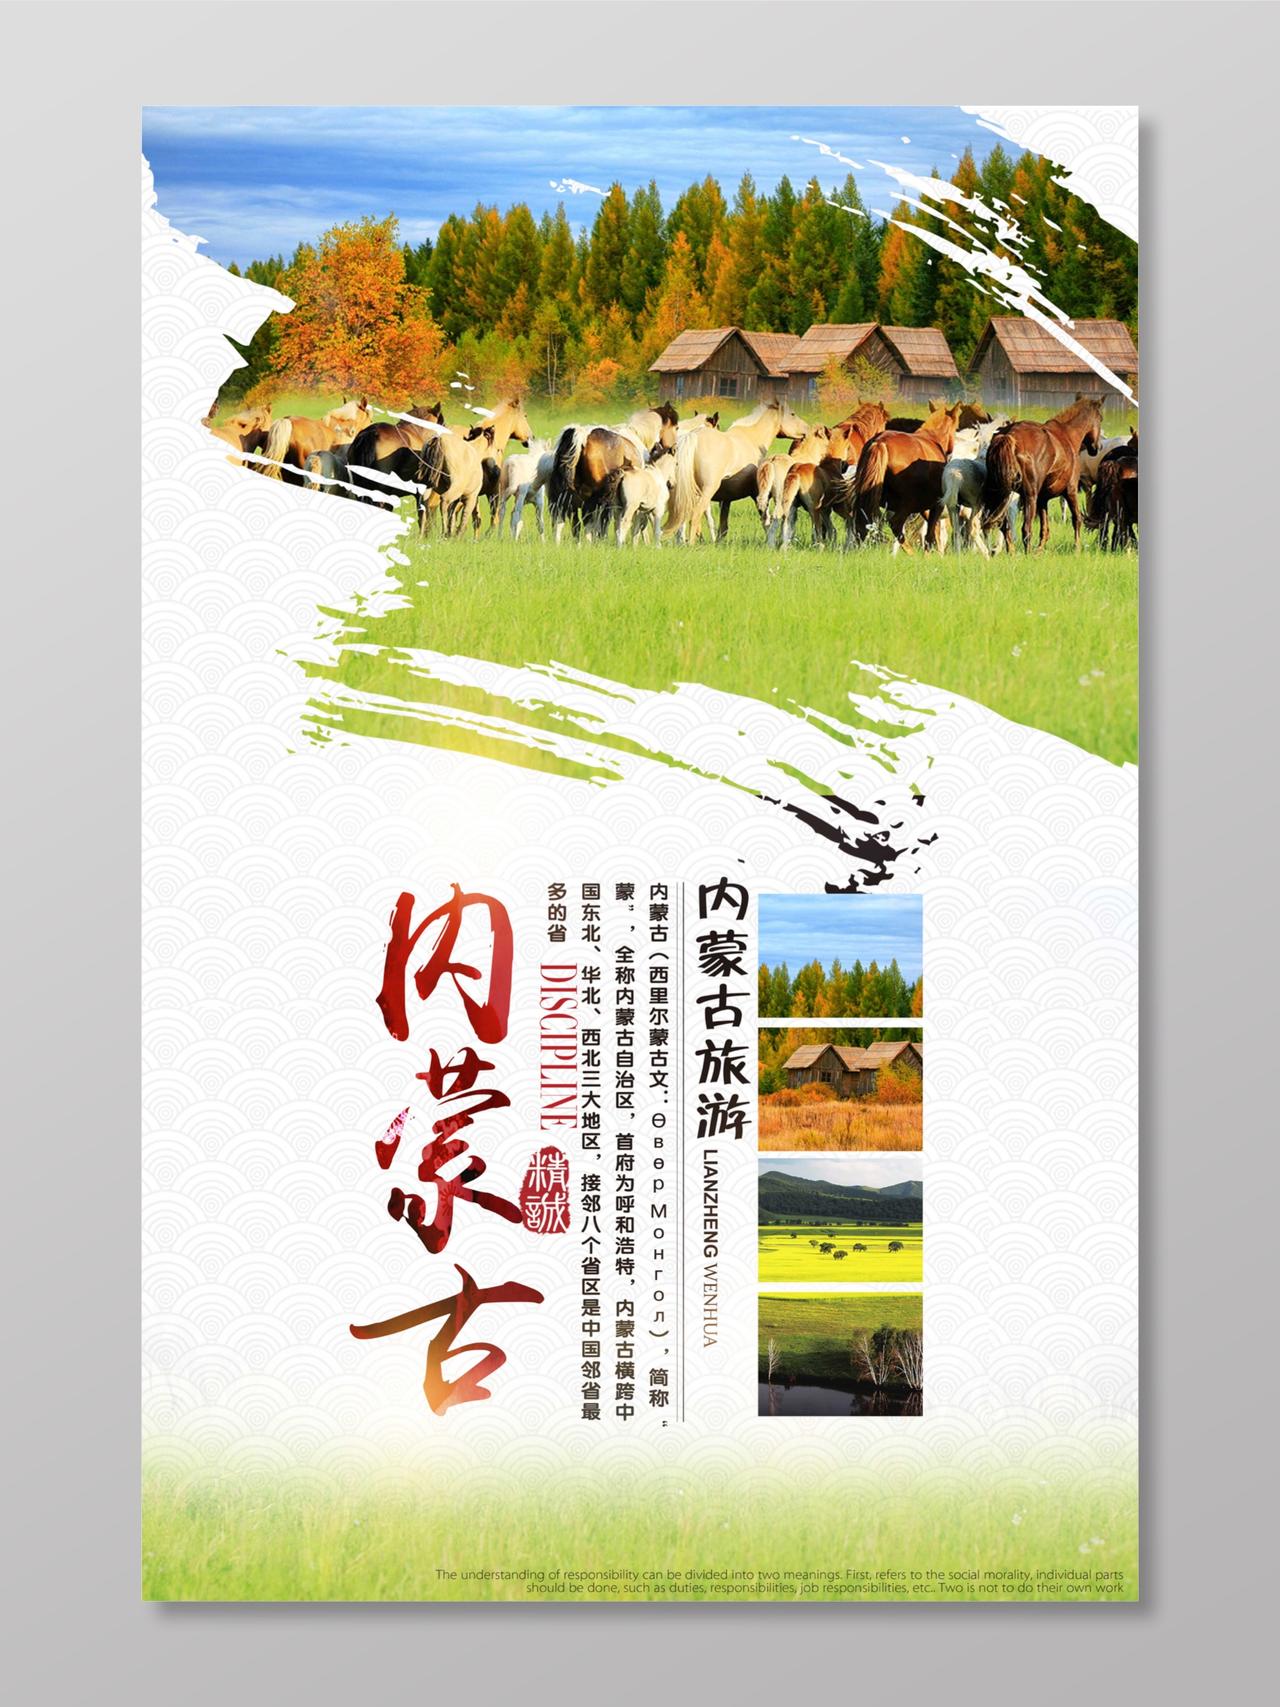 内蒙古旅游海报设计